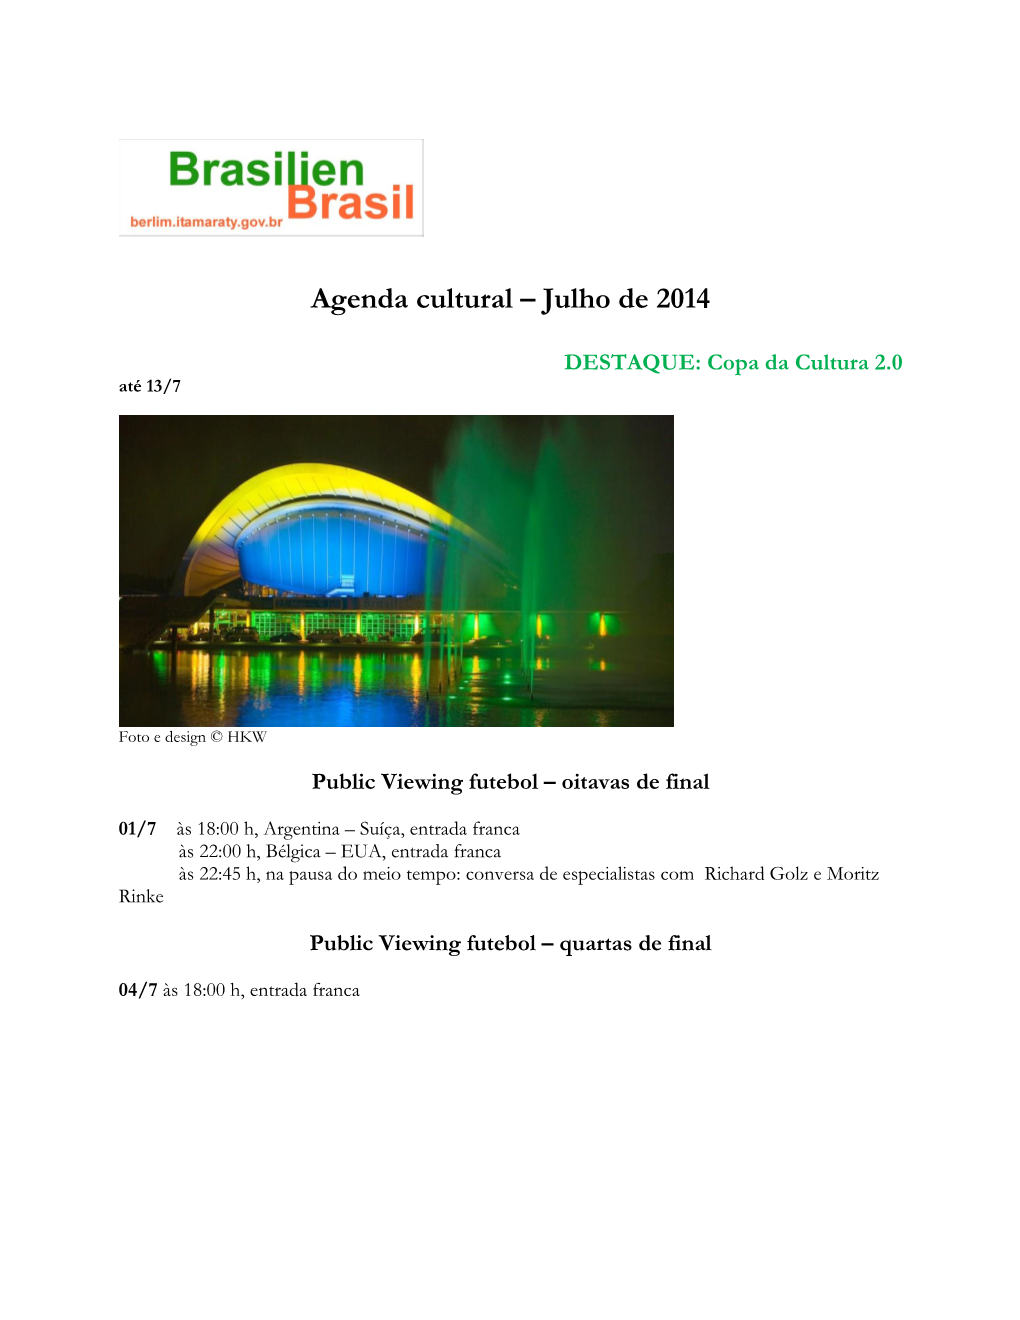 Agenda Cultural – Julho De 2014